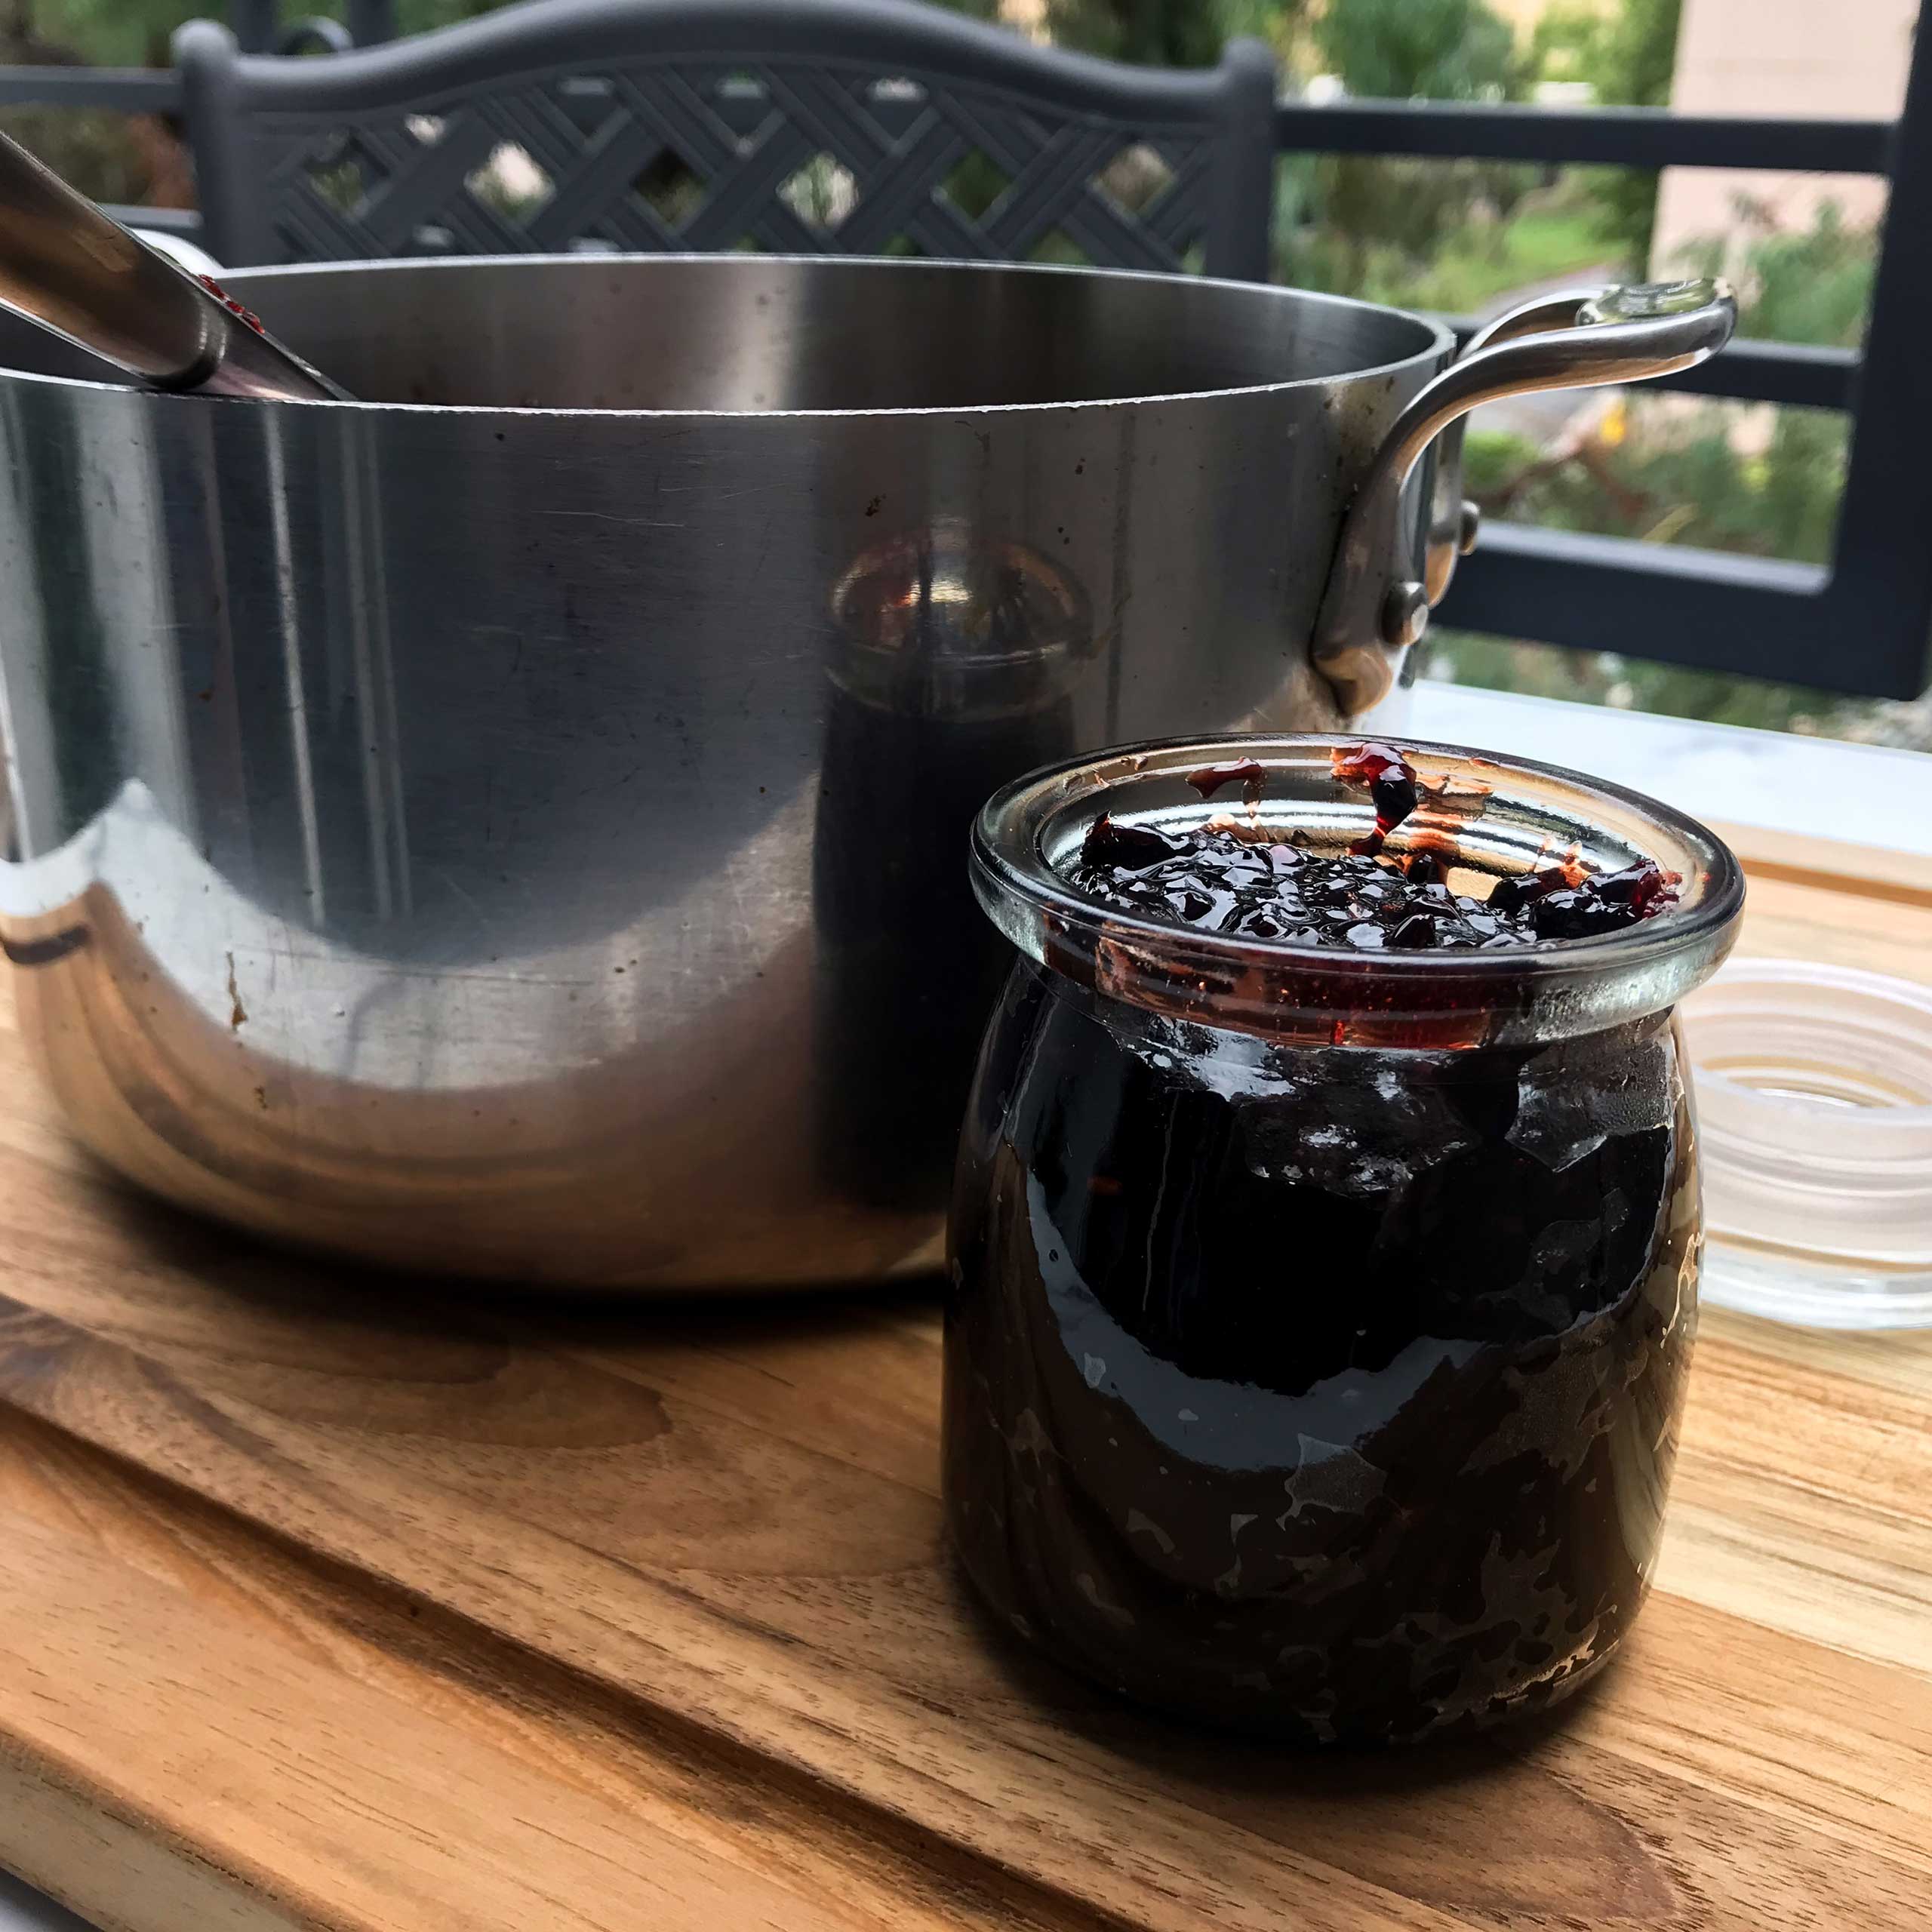 full jar of jam next to pot